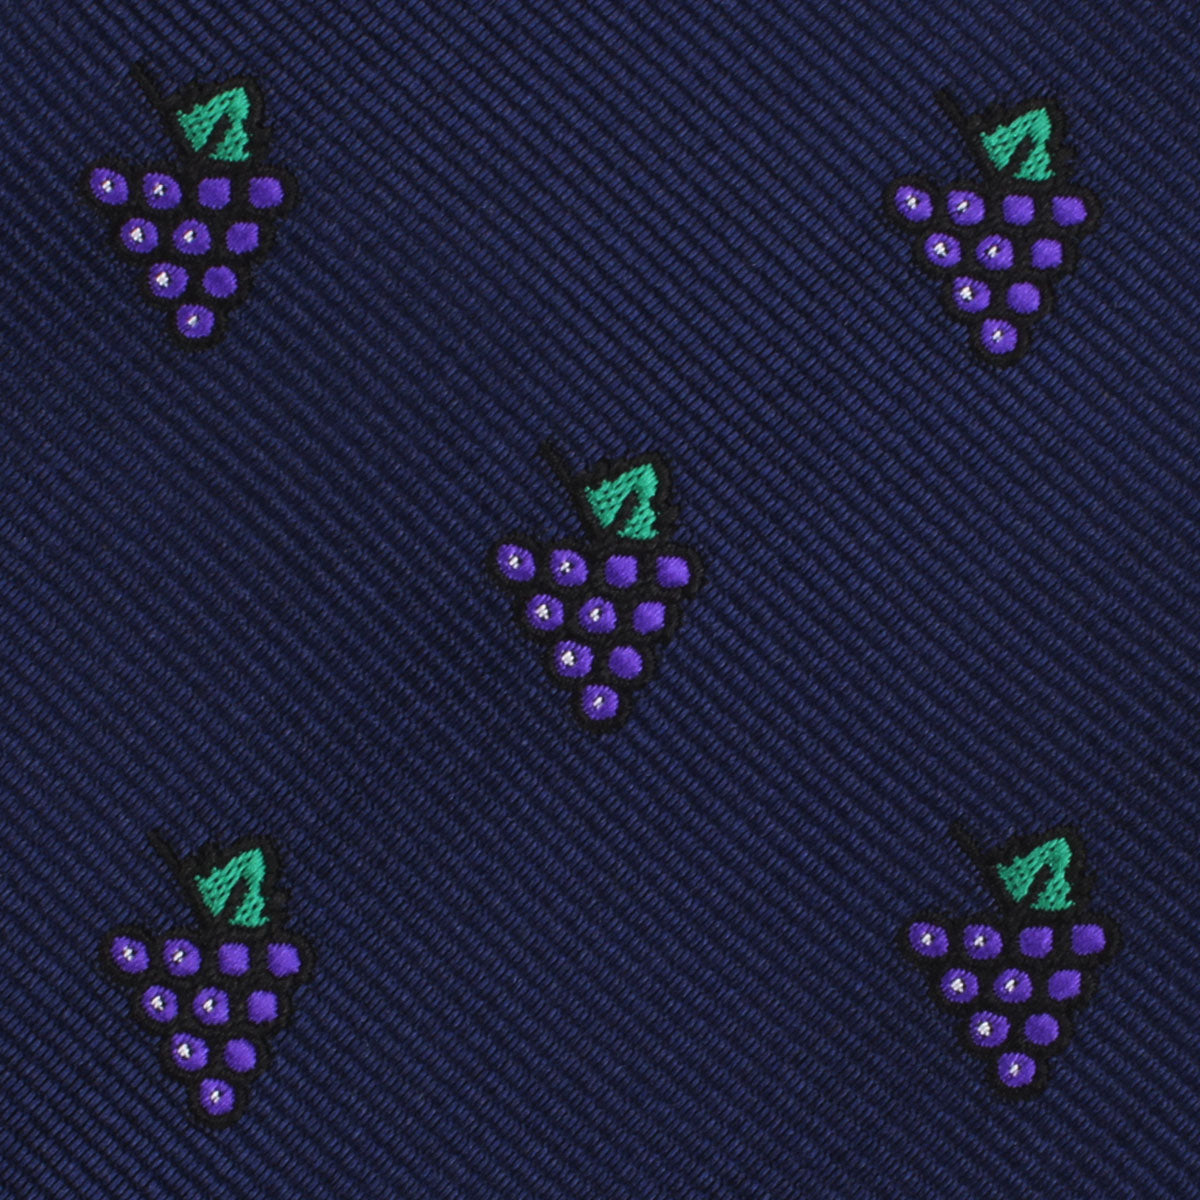 Purple Grapes Skinny Tie Fabric